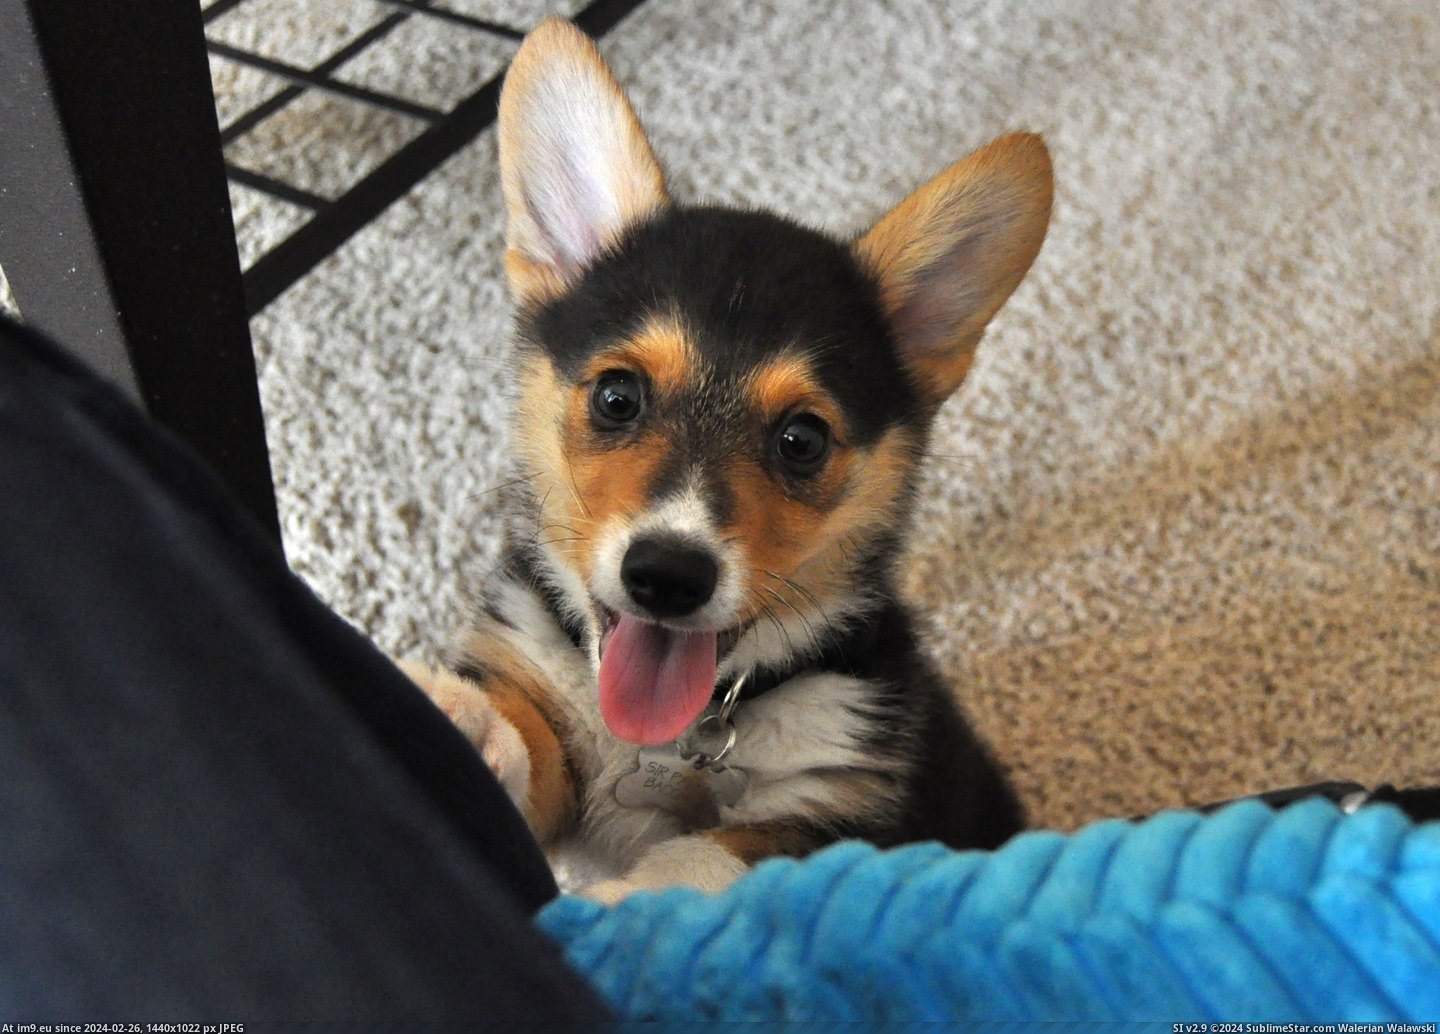 #Puppy #Pancake #Corgi [Aww] This is my corgi puppy, Pancake. 5 Pic. (Изображение из альбом My r/AWW favs))